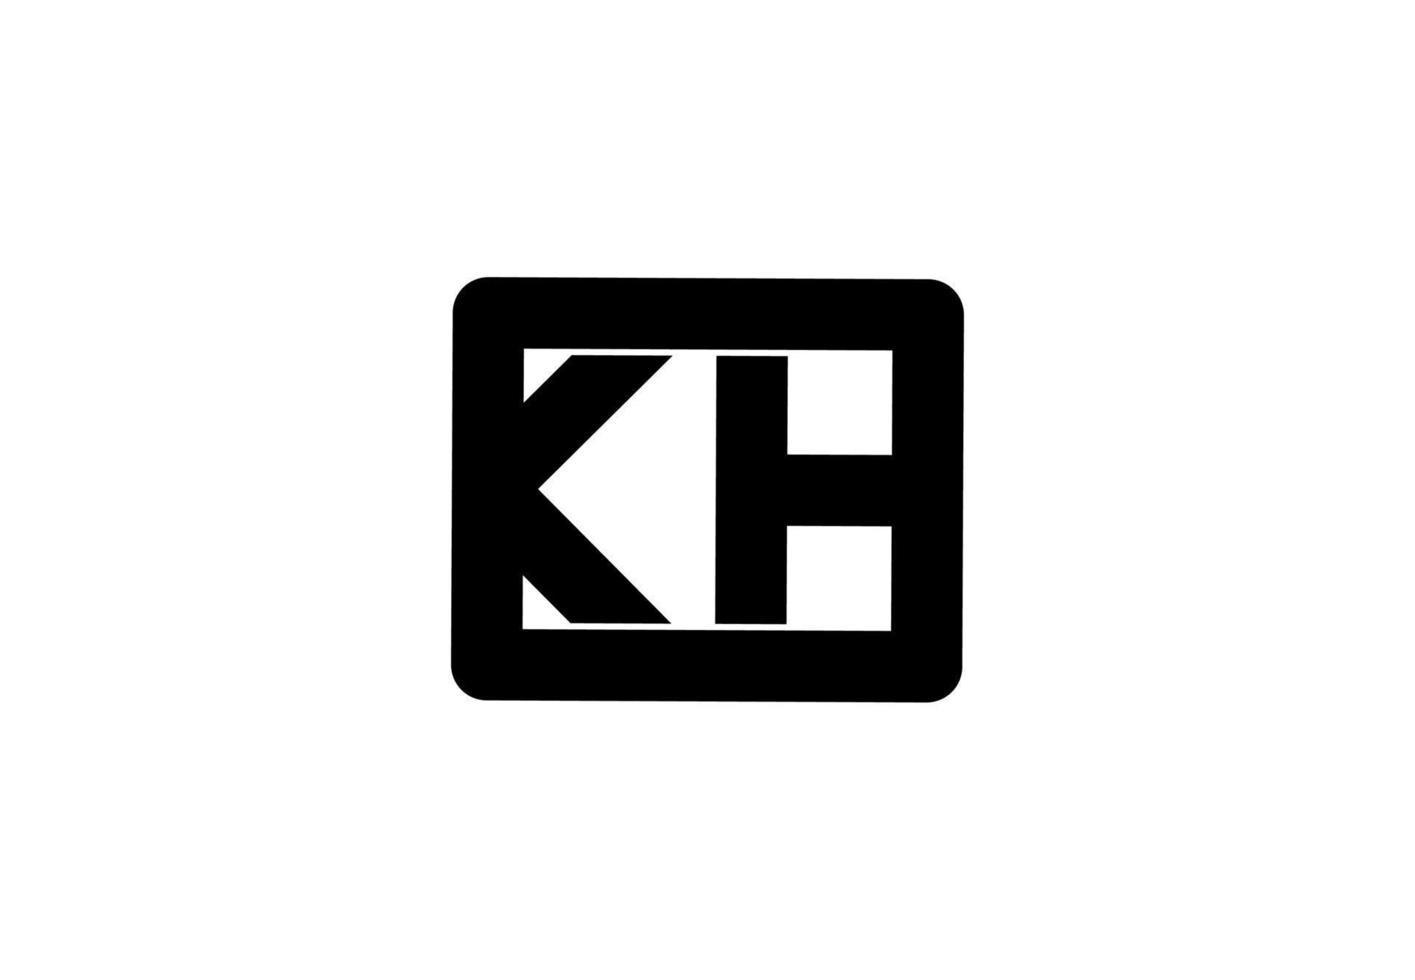 kh hk kh logotipo da letra inicial vetor